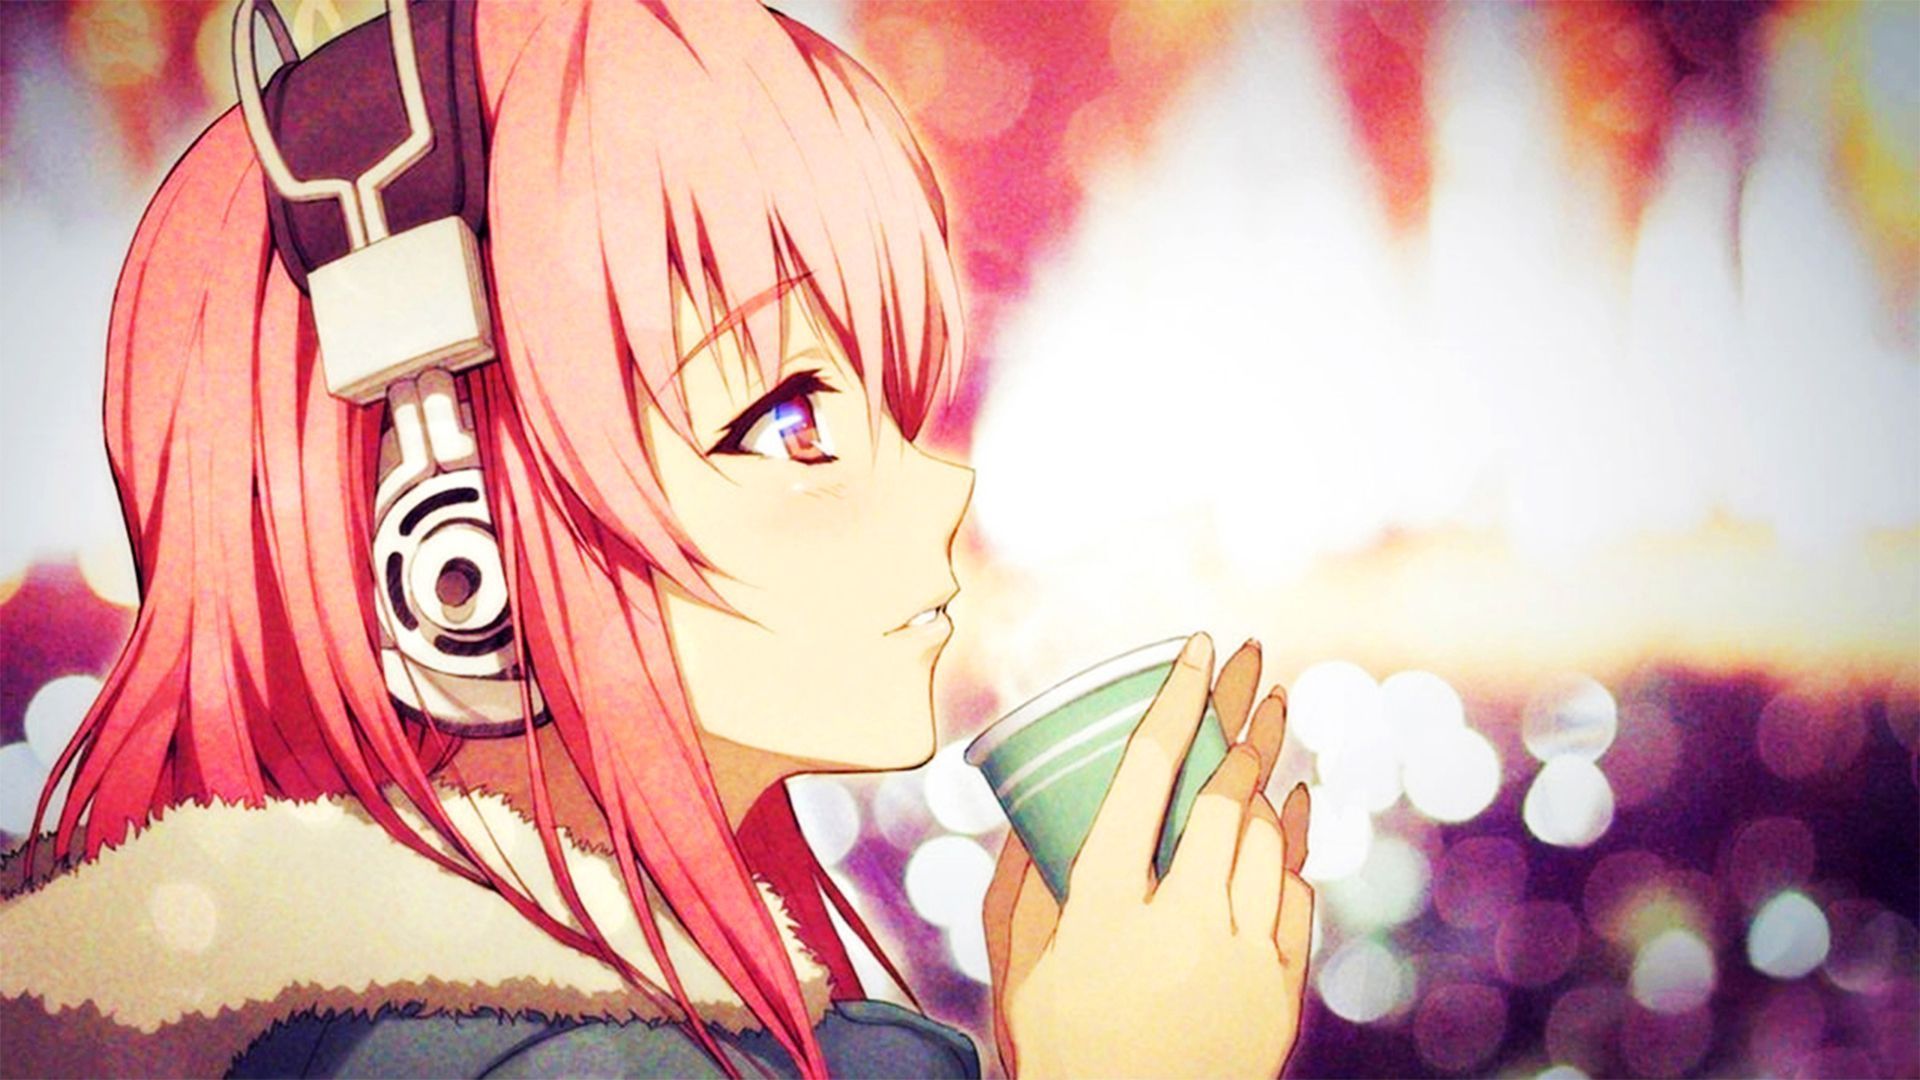 Anime Girl With Headphones Drinking - PixelMusicPixelMusic